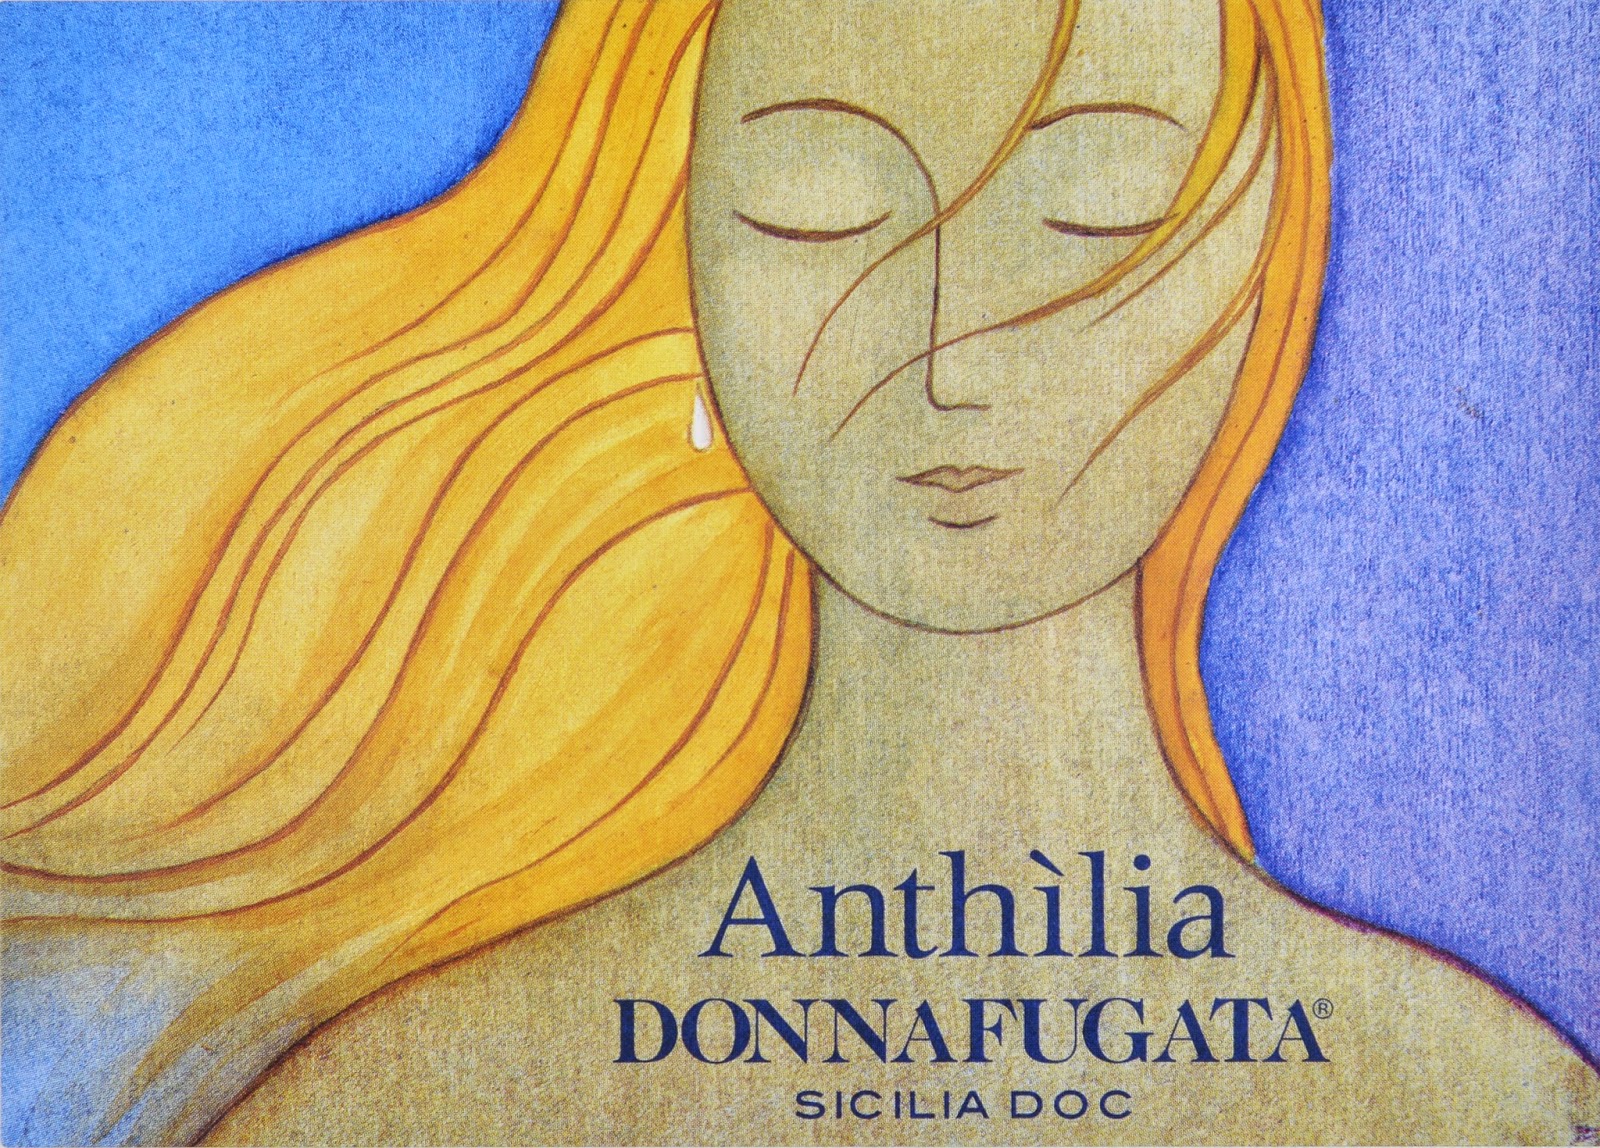 Anthilia catarratto from Donnafugata